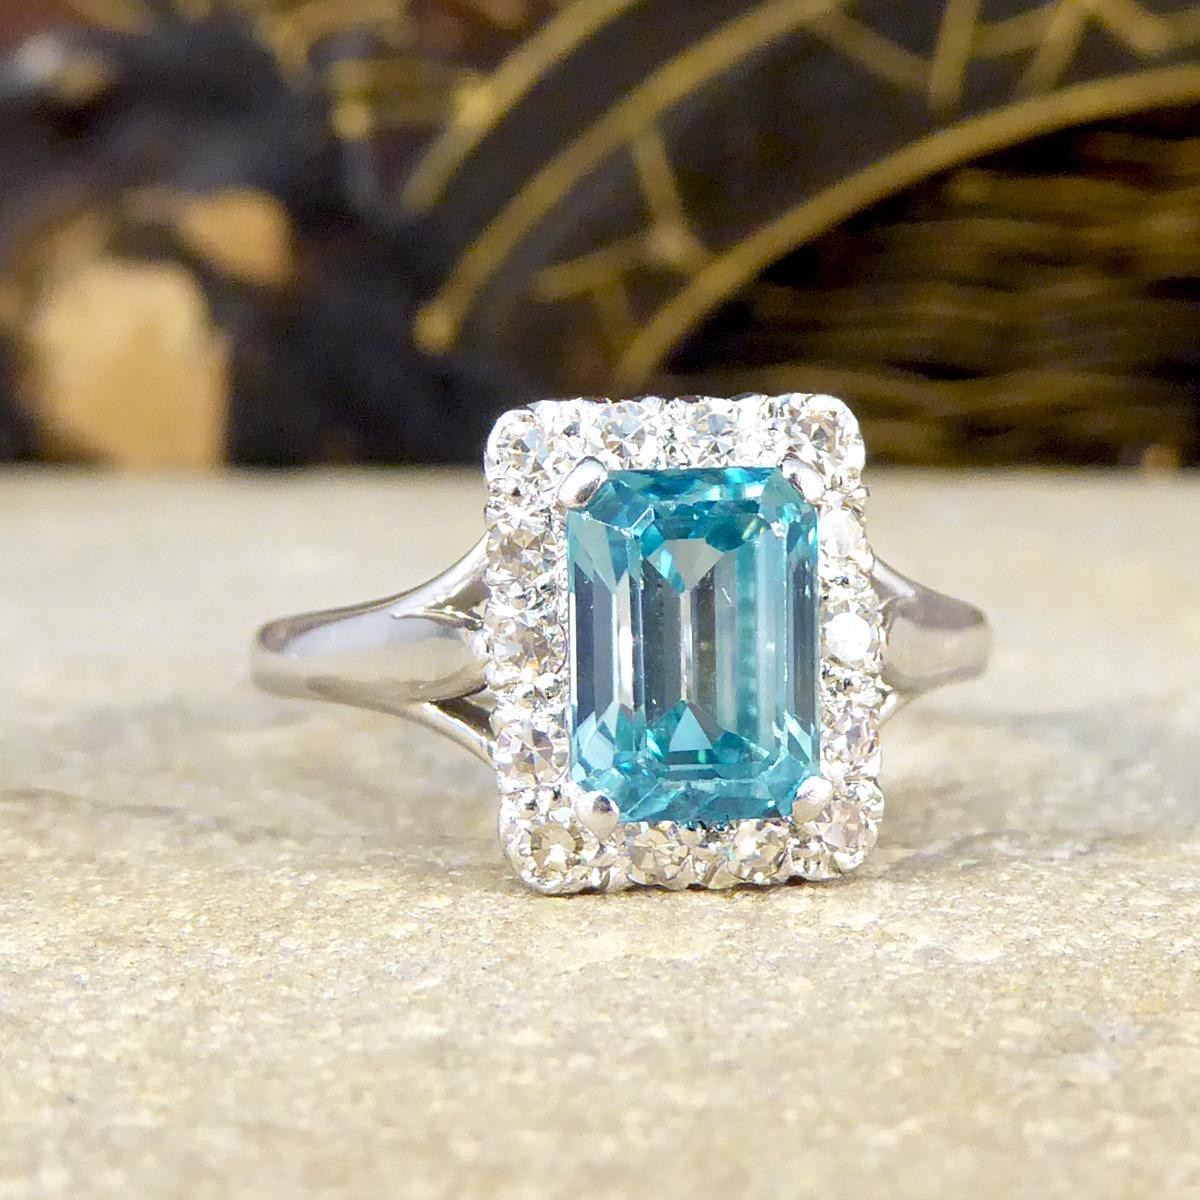 In diesem wunderschönen Vintage-Ring befindet sich in der Mitte ein blauer Zirkon im Smaragdschliff, der eine helle und schöne blaue Farbe aufweist. Die Fassung mit vier Krallen lässt viel Licht durch den Stein hindurch und lässt ihn richtig